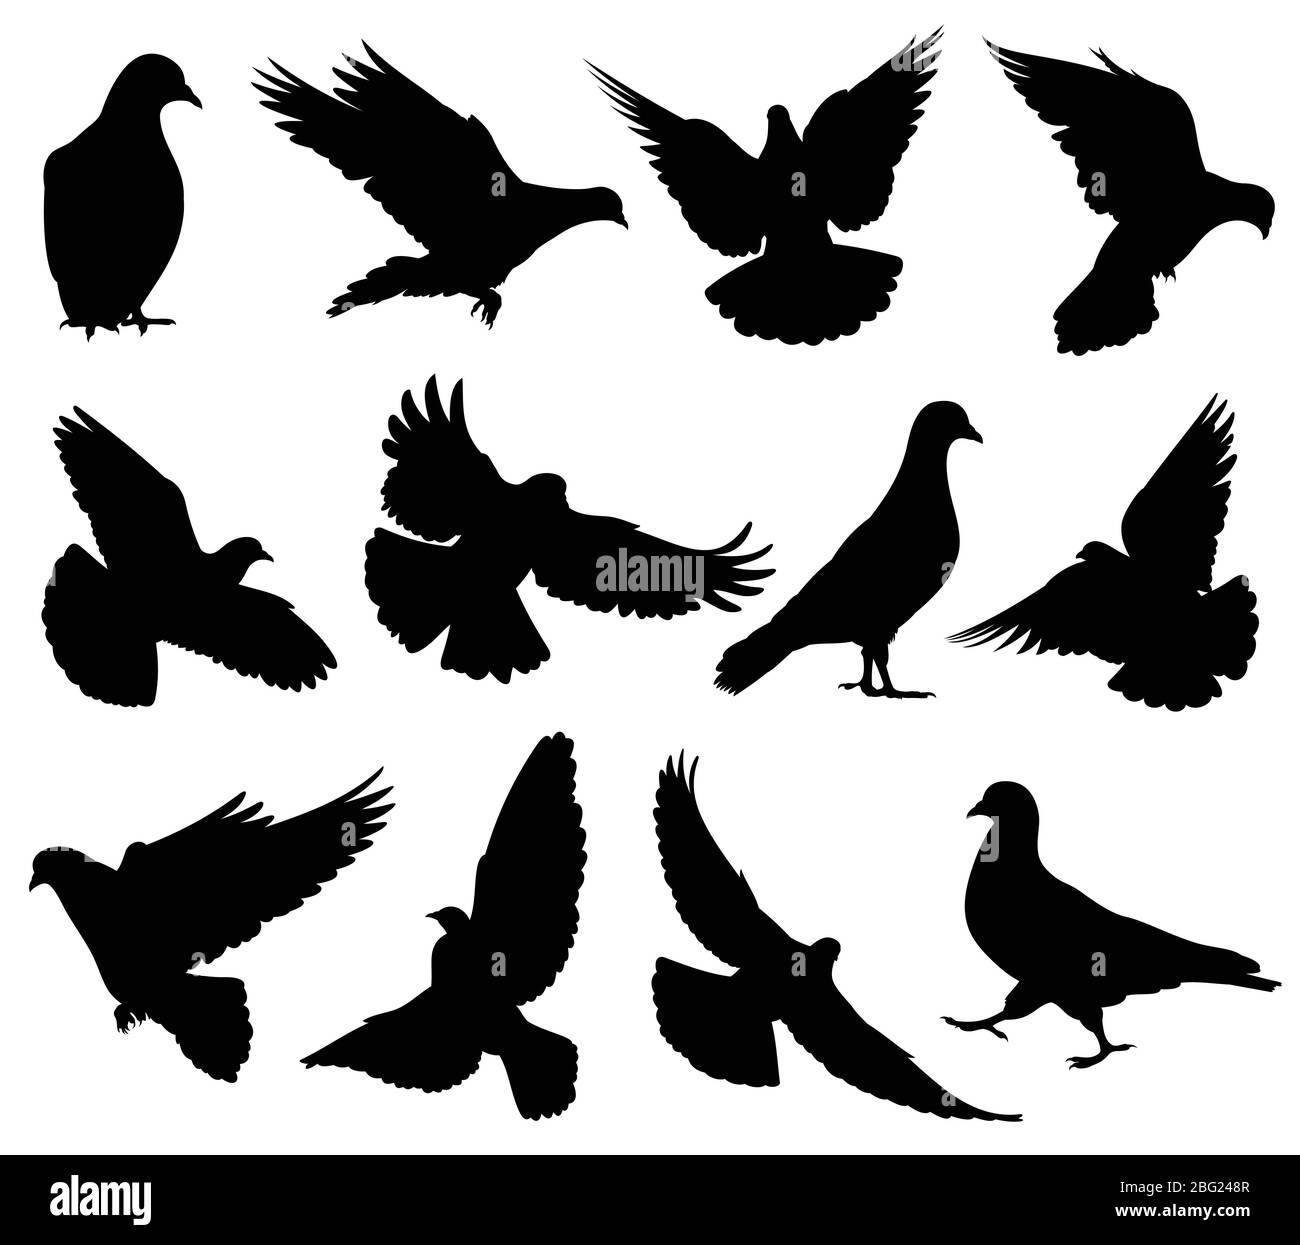 Fliegende Taube Vektor Silhouetten isoliert. Tauben setzen Liebe und Frieden Symbole. Schwarze Form Form Taube und Taube Silhouette Illustration Stock Vektor